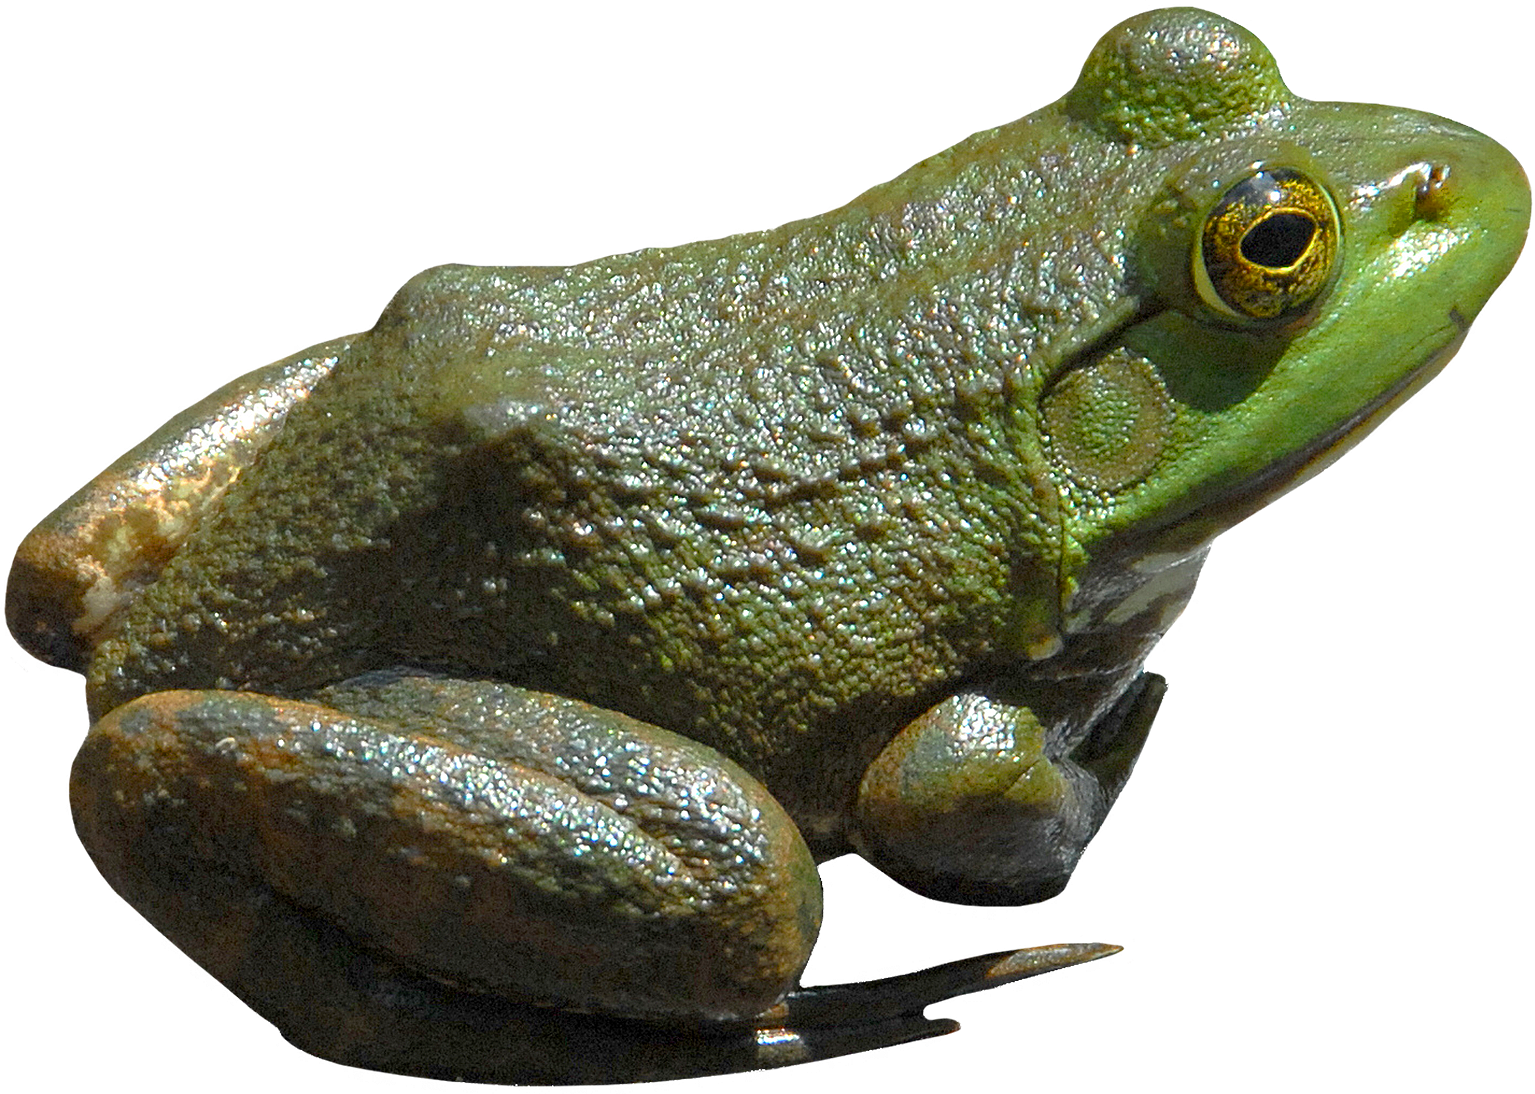 Grüner Frosch